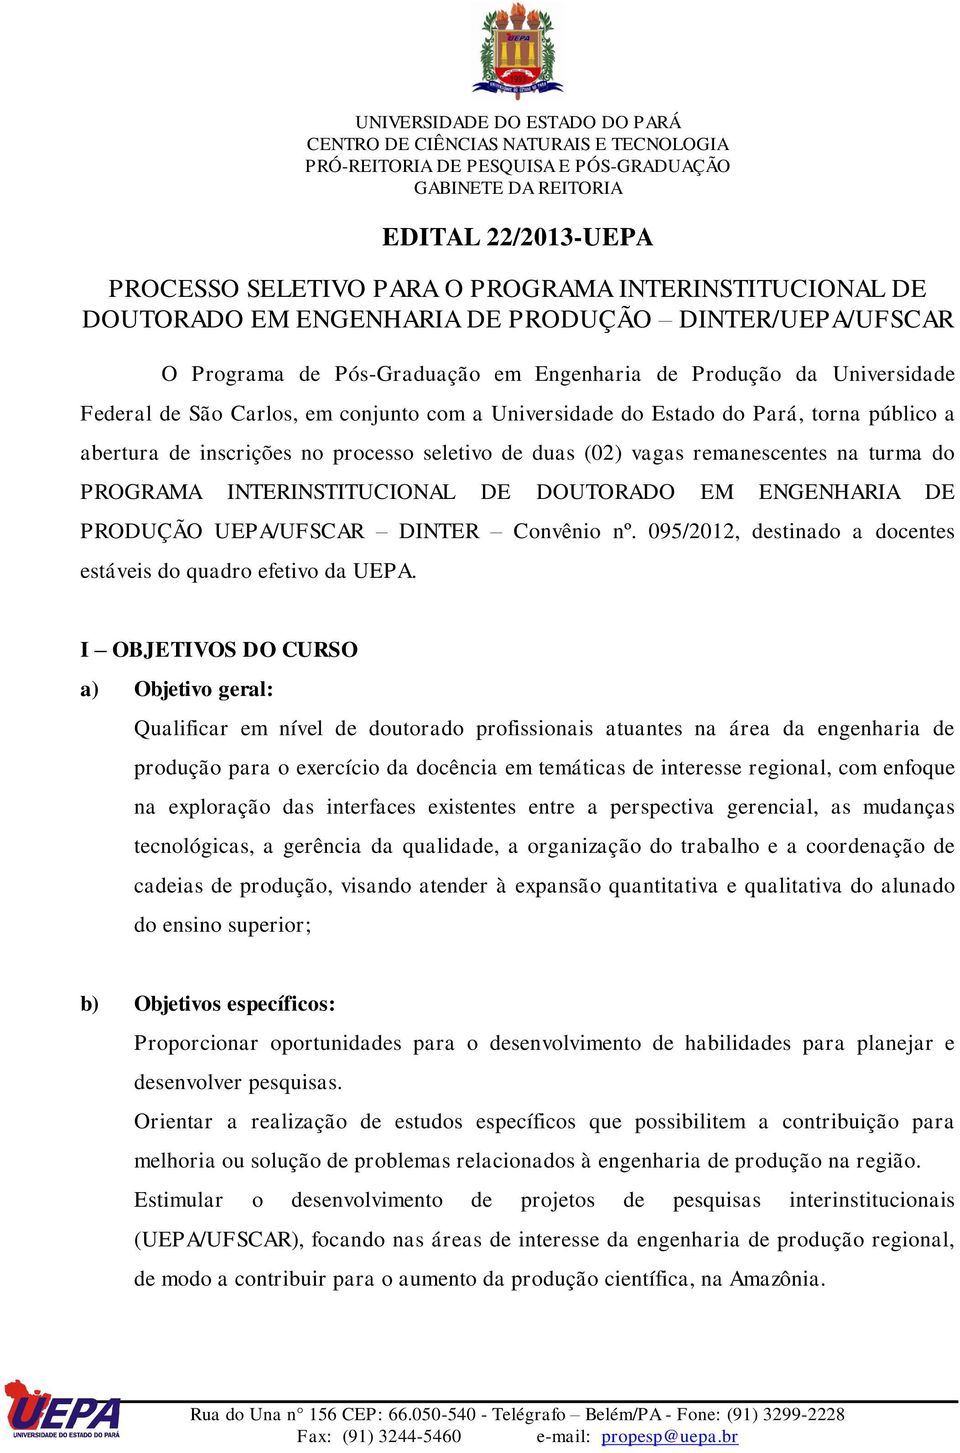 INTERINSTITUCIONAL DE DOUTORADO EM ENGENHARIA DE PRODUÇÃO UEPA/UFSCAR DINTER Convênio nº. 095/2012, destinado a docentes estáveis do quadro efetivo da UEPA.